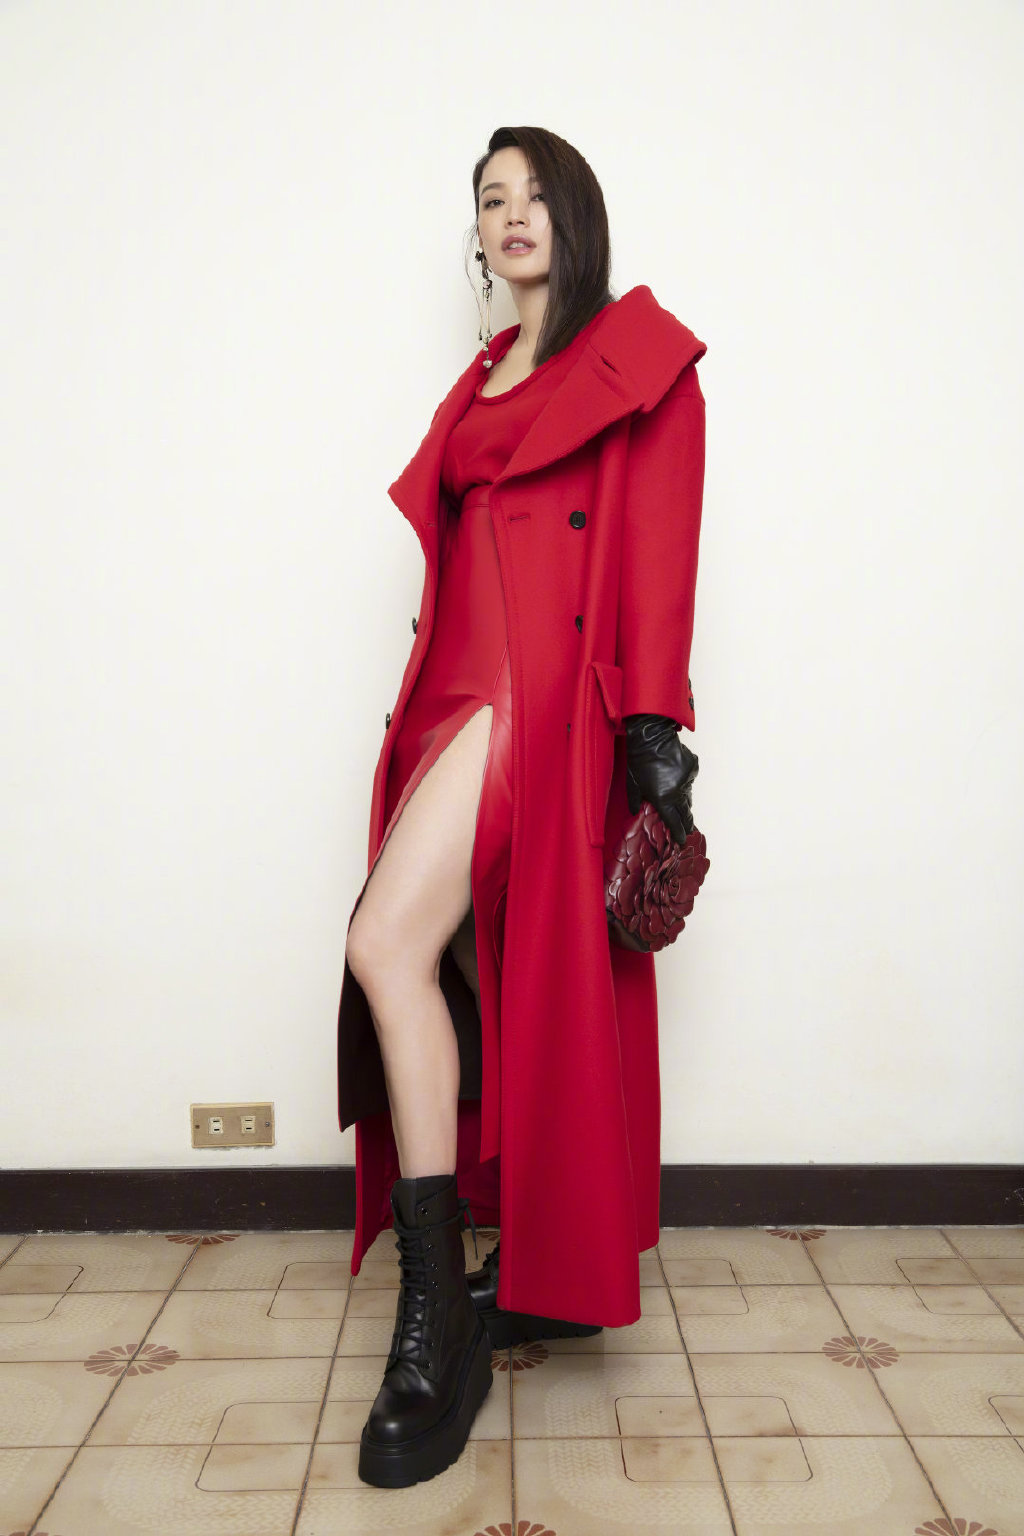 美女明星舒淇红色大衣性感冷艳广告写真图片大全第1张